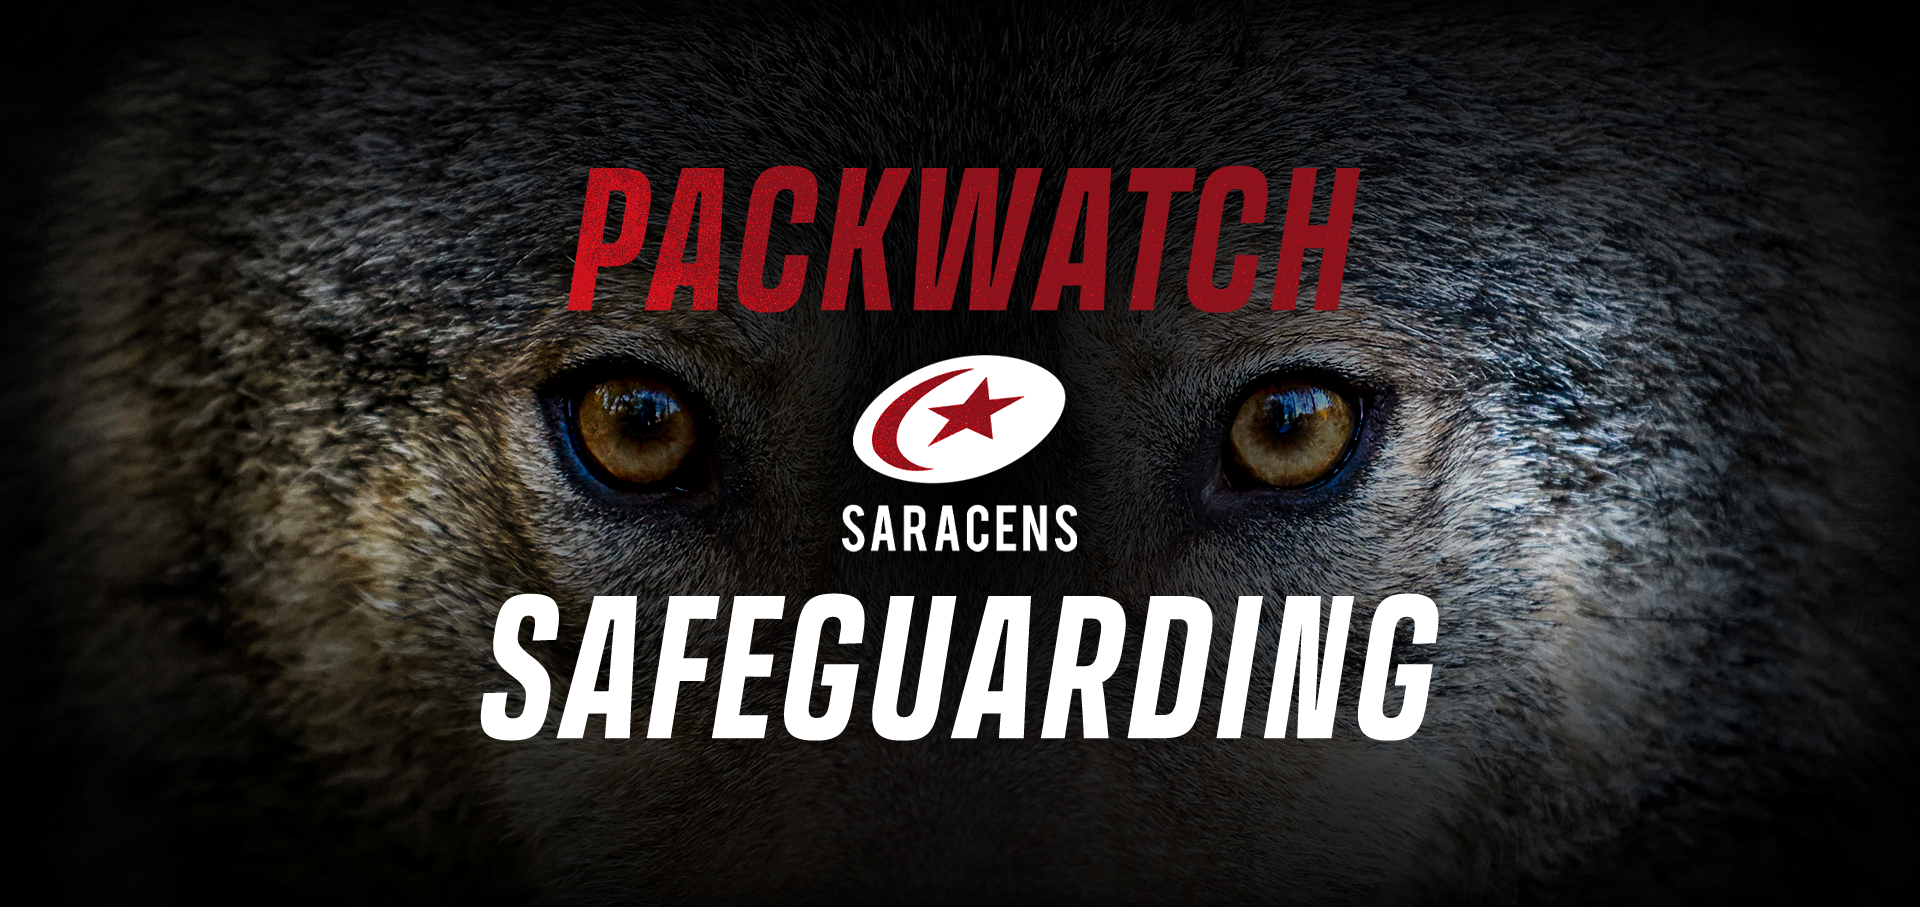 Packwatch Safeguarding